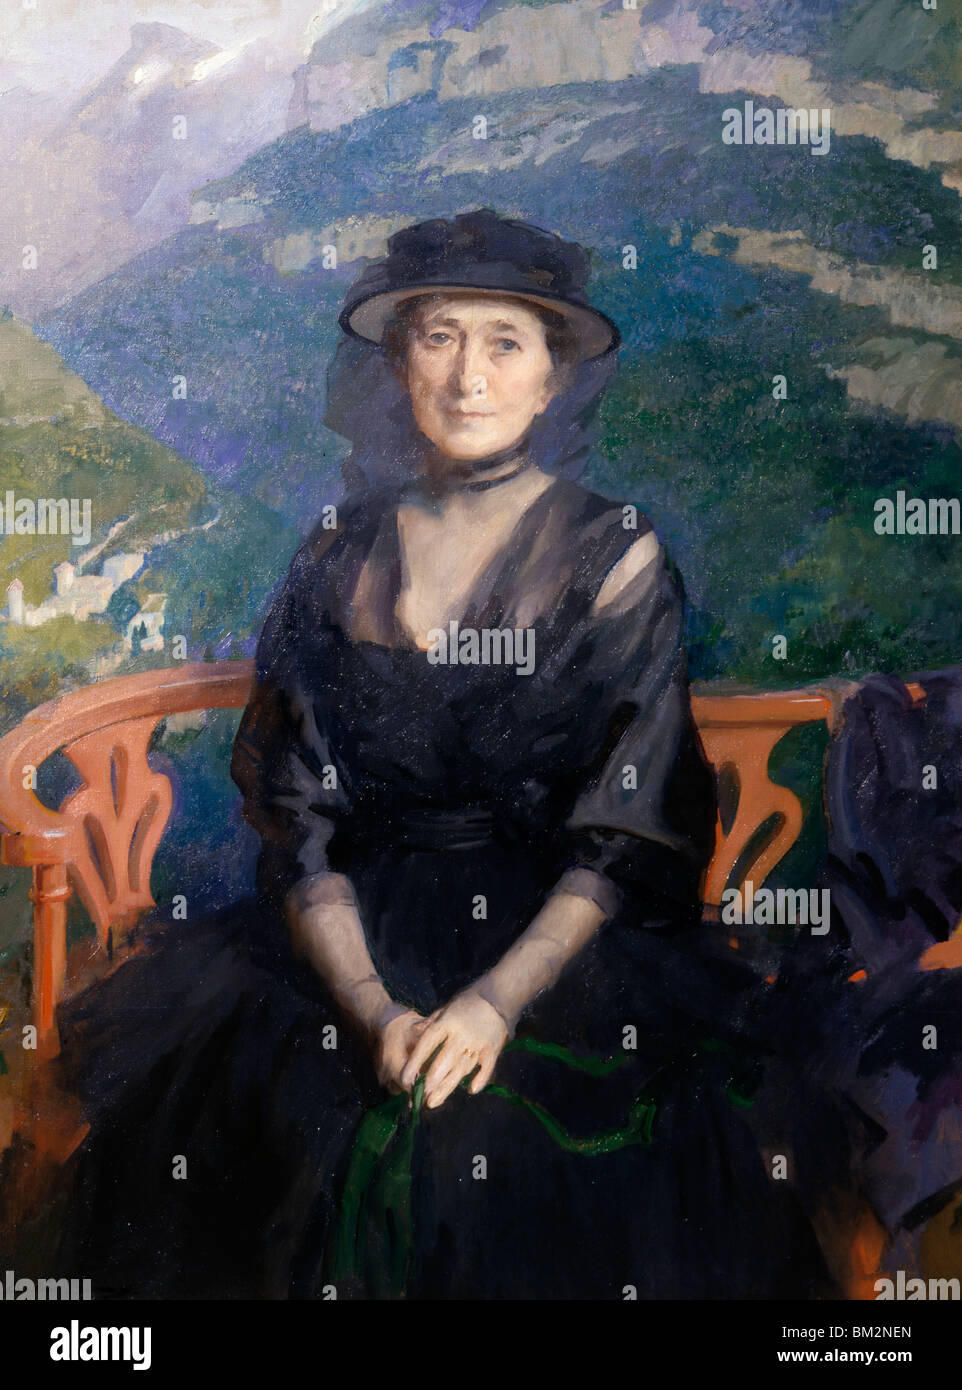 L'élégance par Cecilia Beaux, huile sur toile, (1855-1942), Etats-Unis, New York, Philadelphie, David David Gallery Banque D'Images